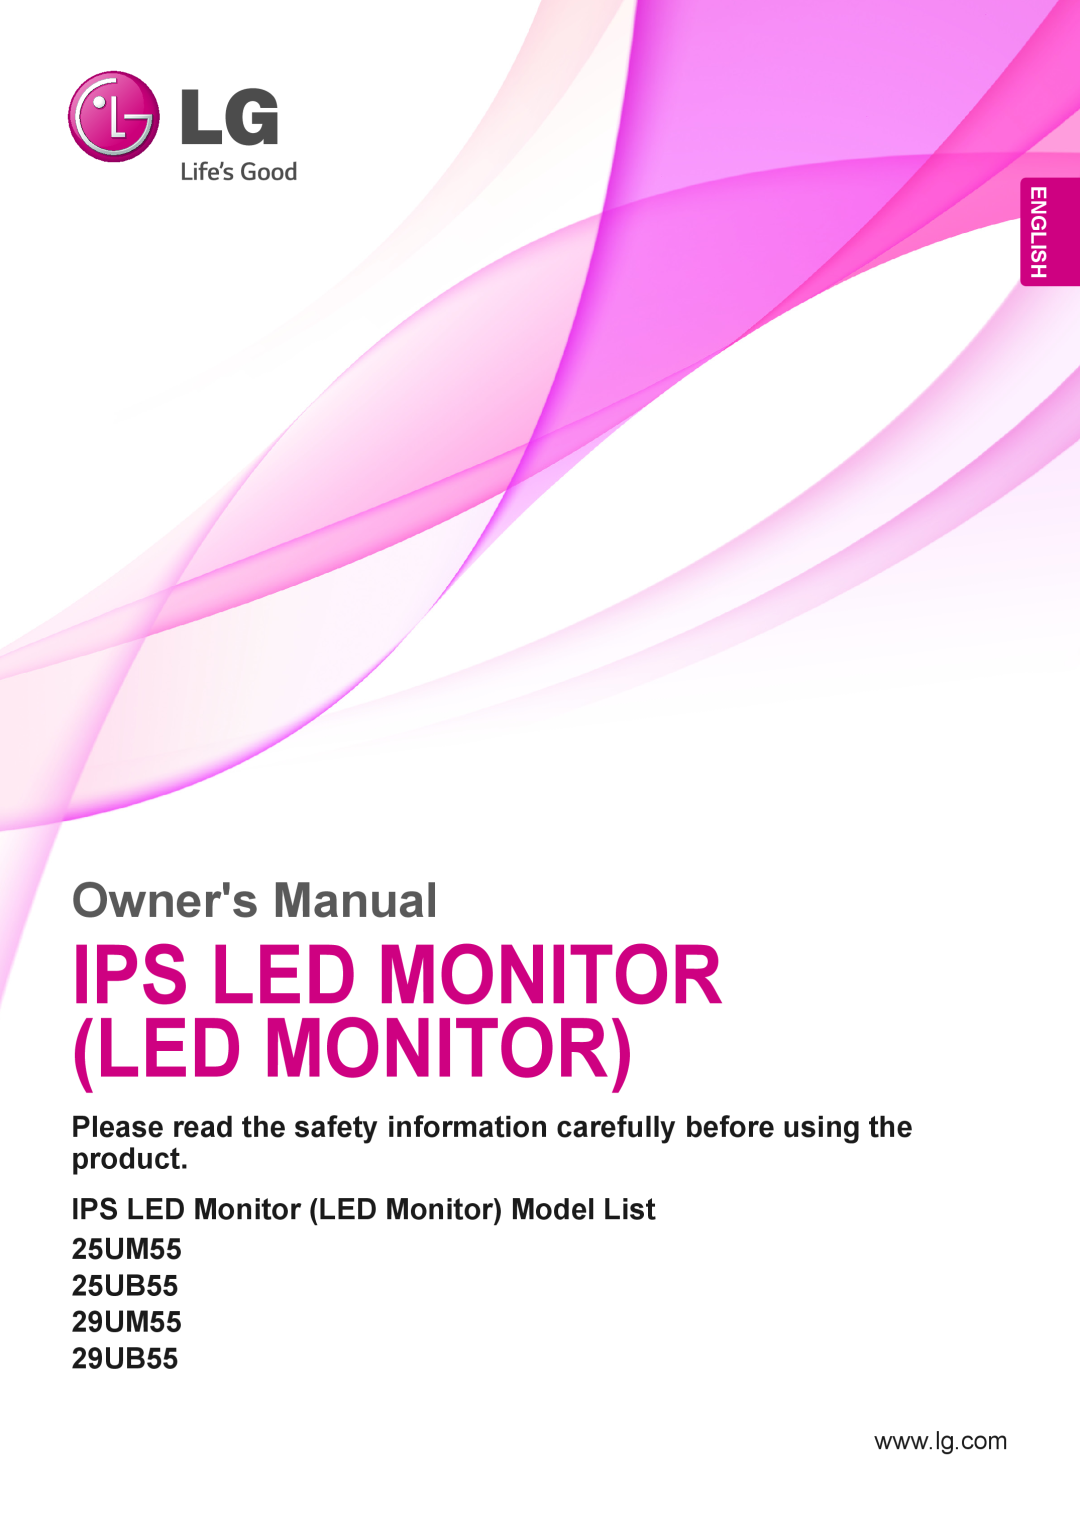 LG Electronics 29UM55, 29UB55, 25UM55, 25UB55 owner manual Ips Led Monitor Led Monitor, Owners Manual, English 